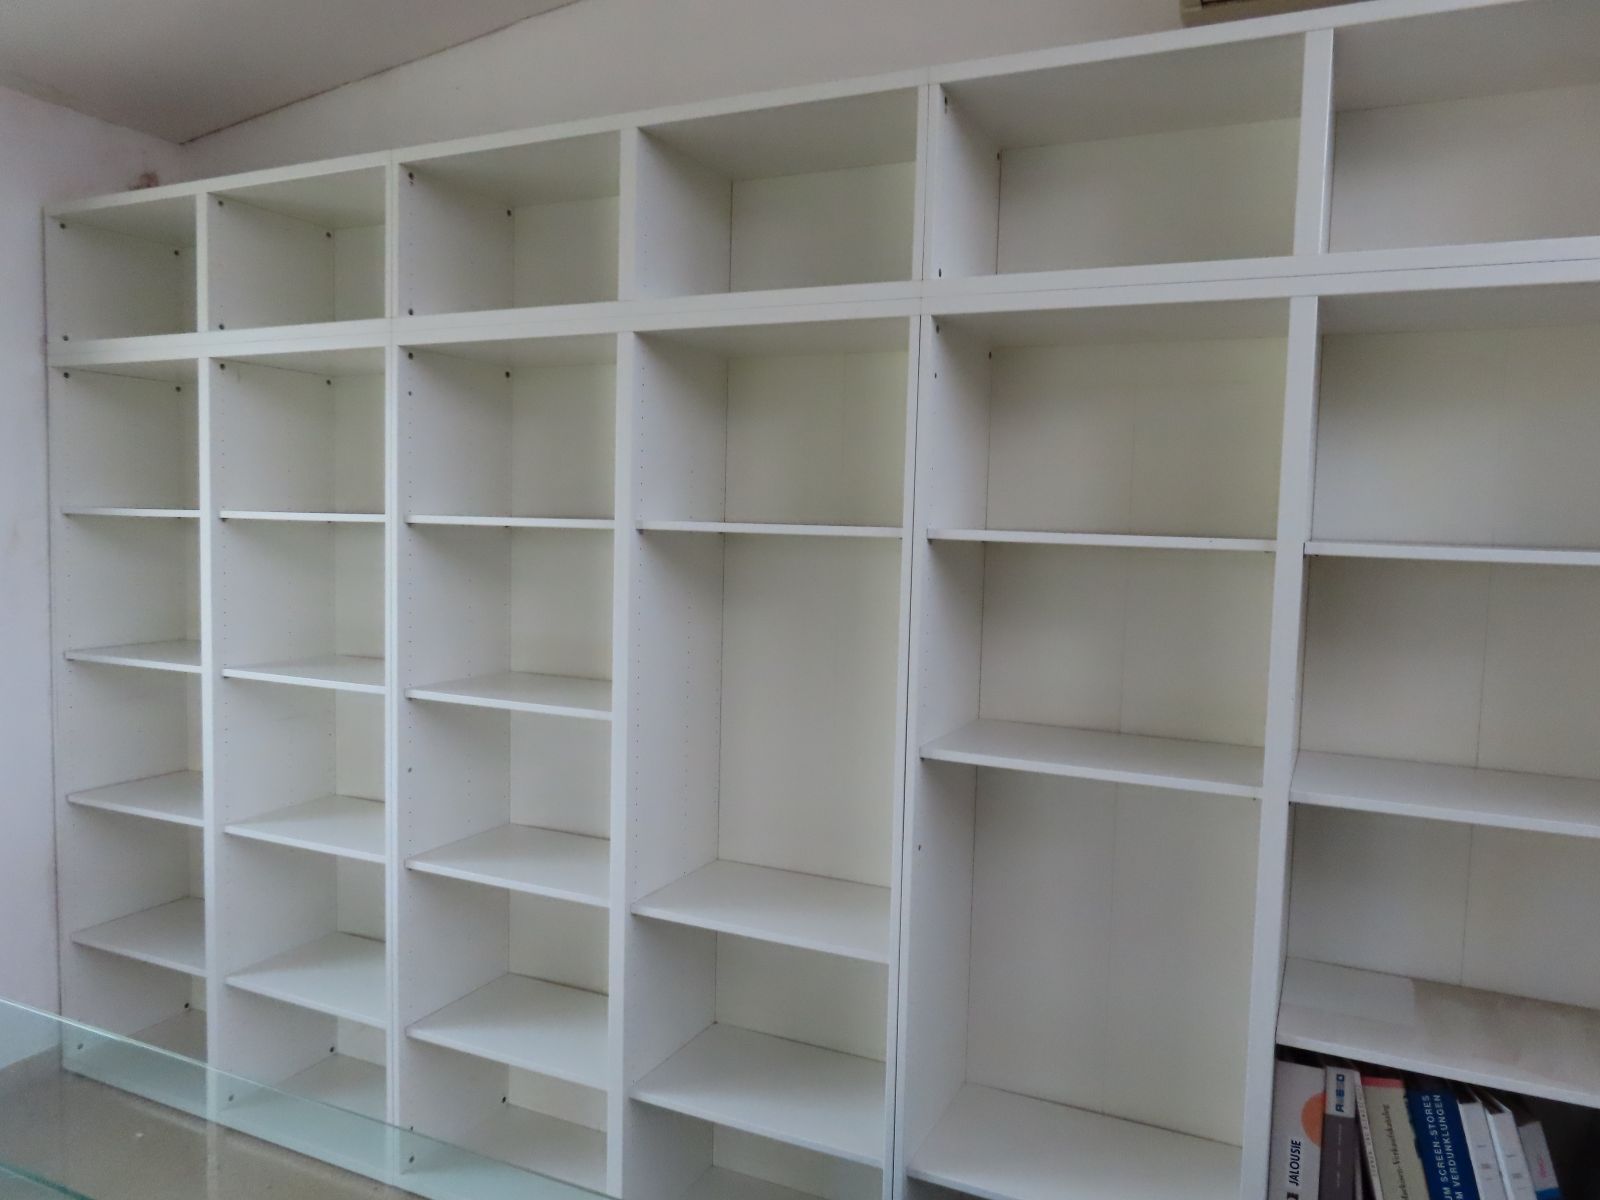 8 pcs. shelves